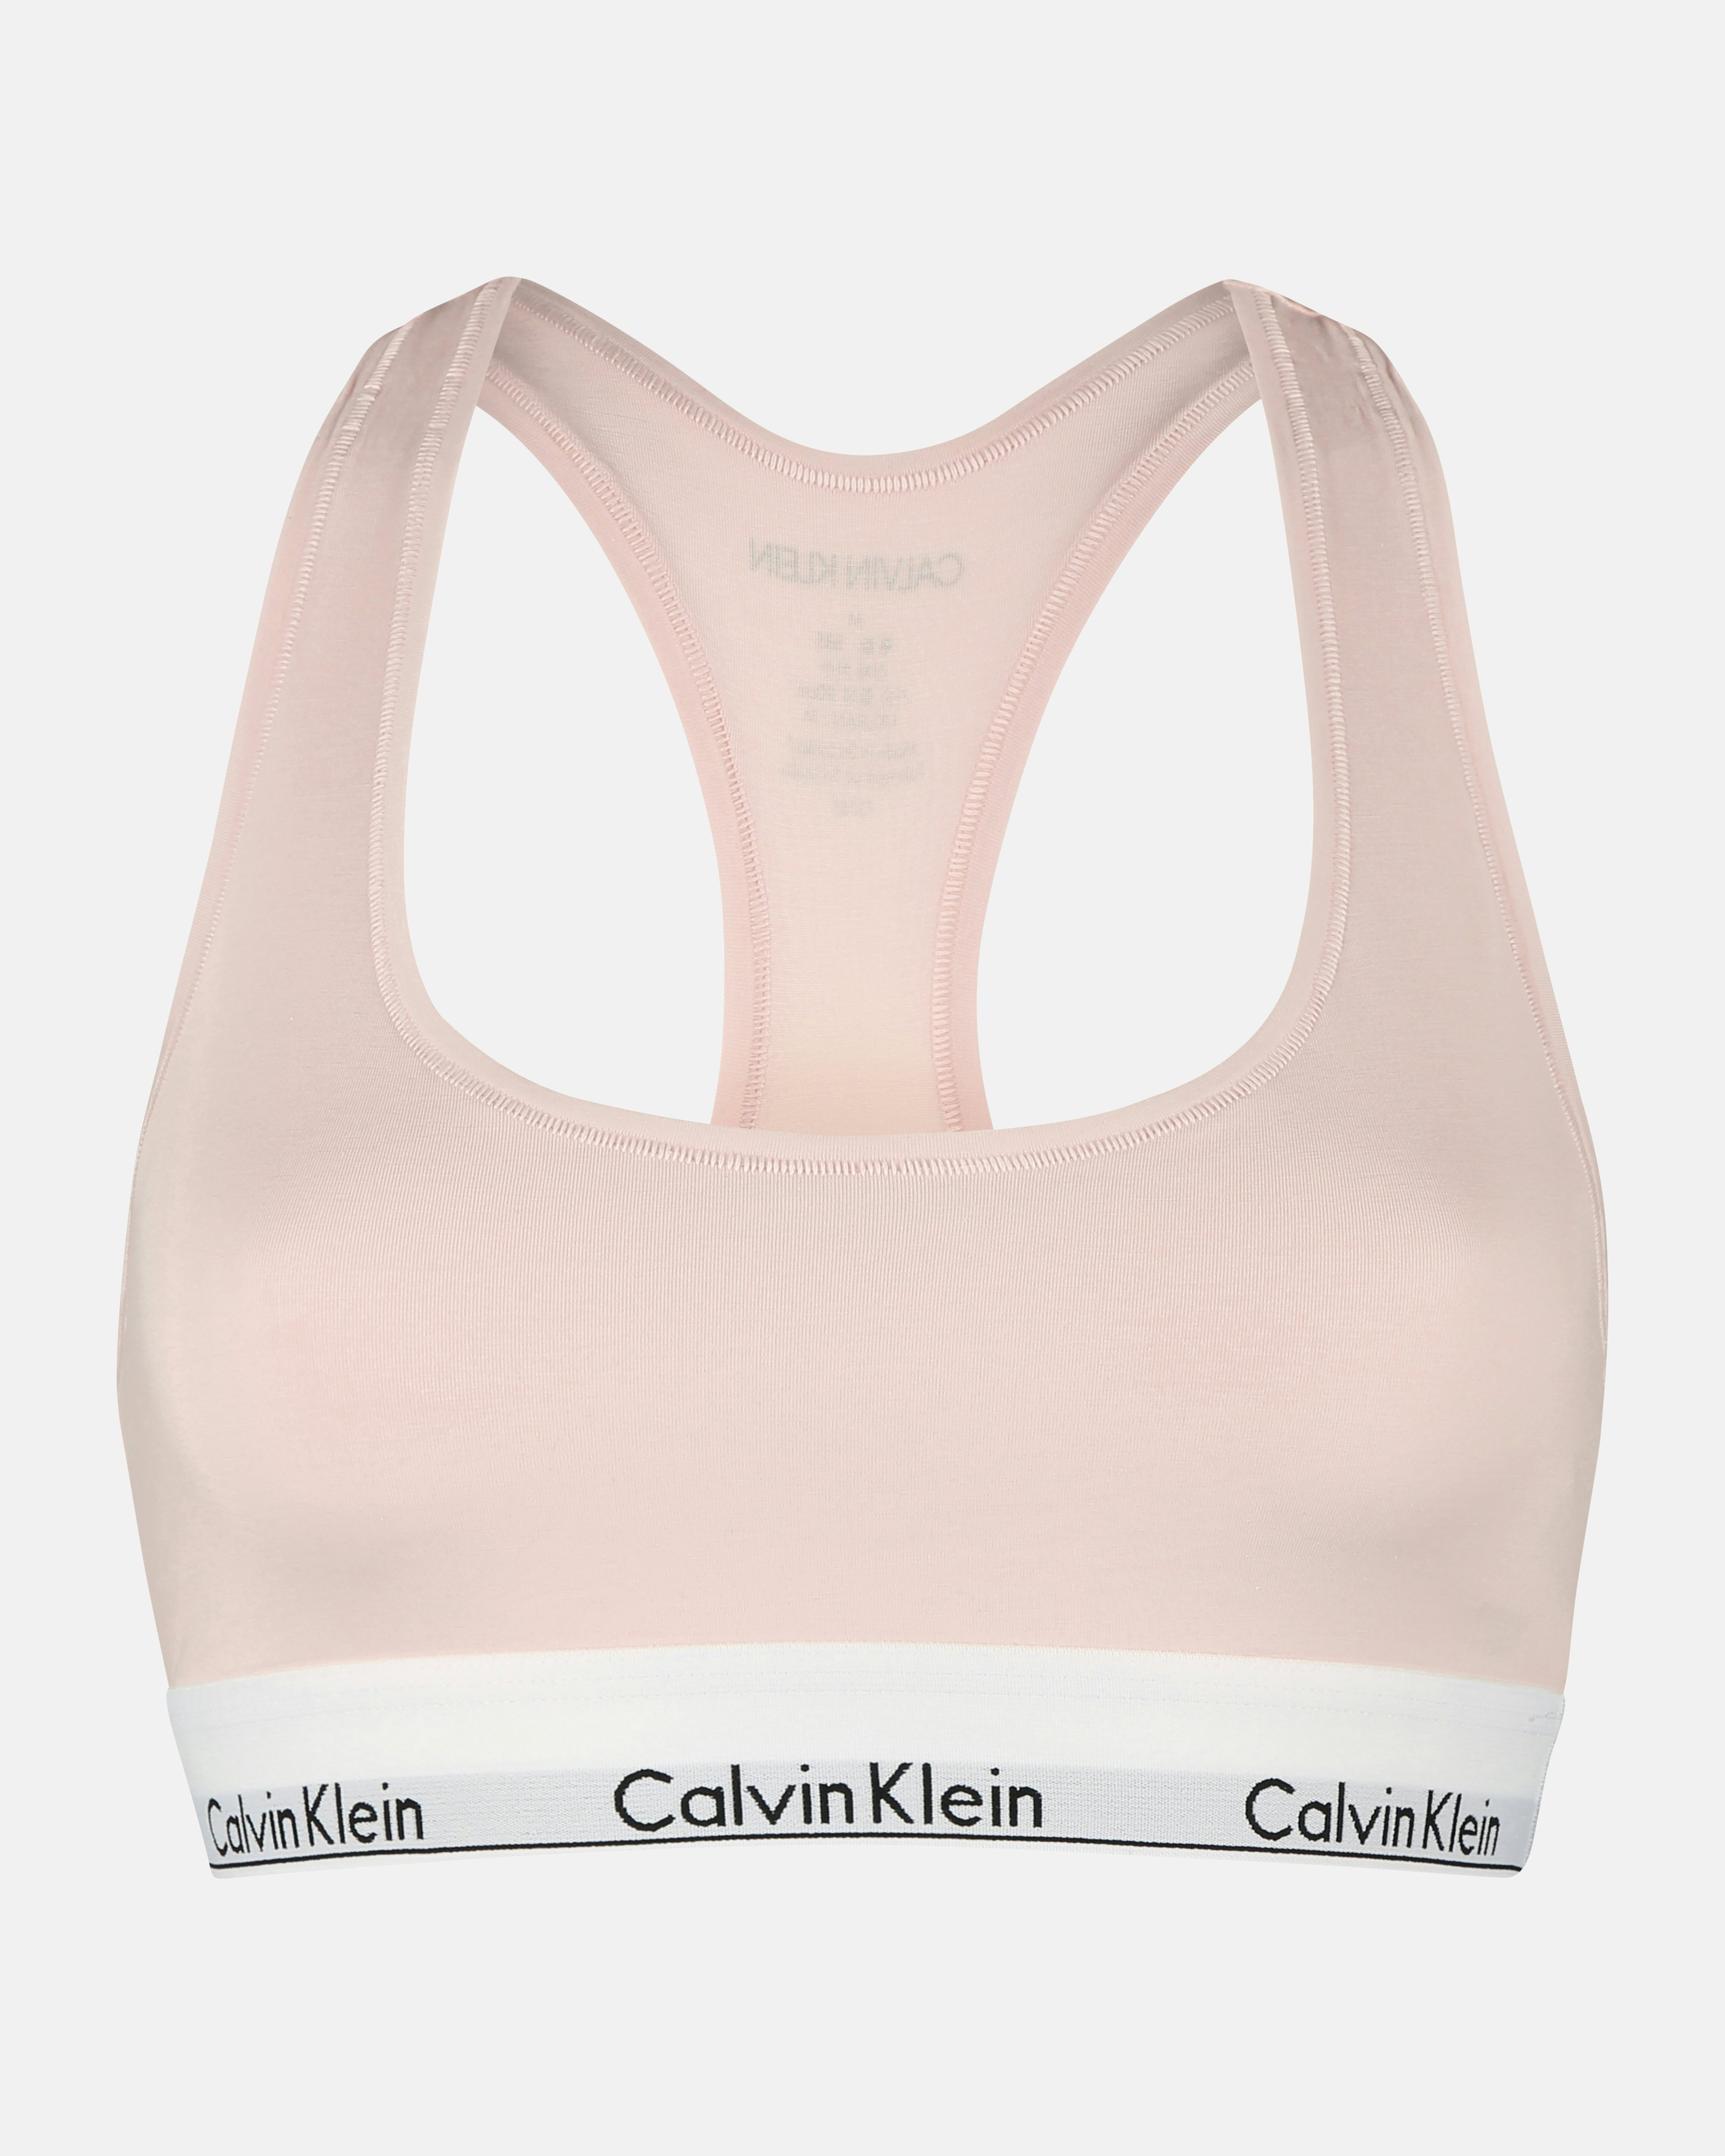 Calvin Klein Pink Flash & Bold Blue Cotton Bralette Crop Tops (2 Pack)